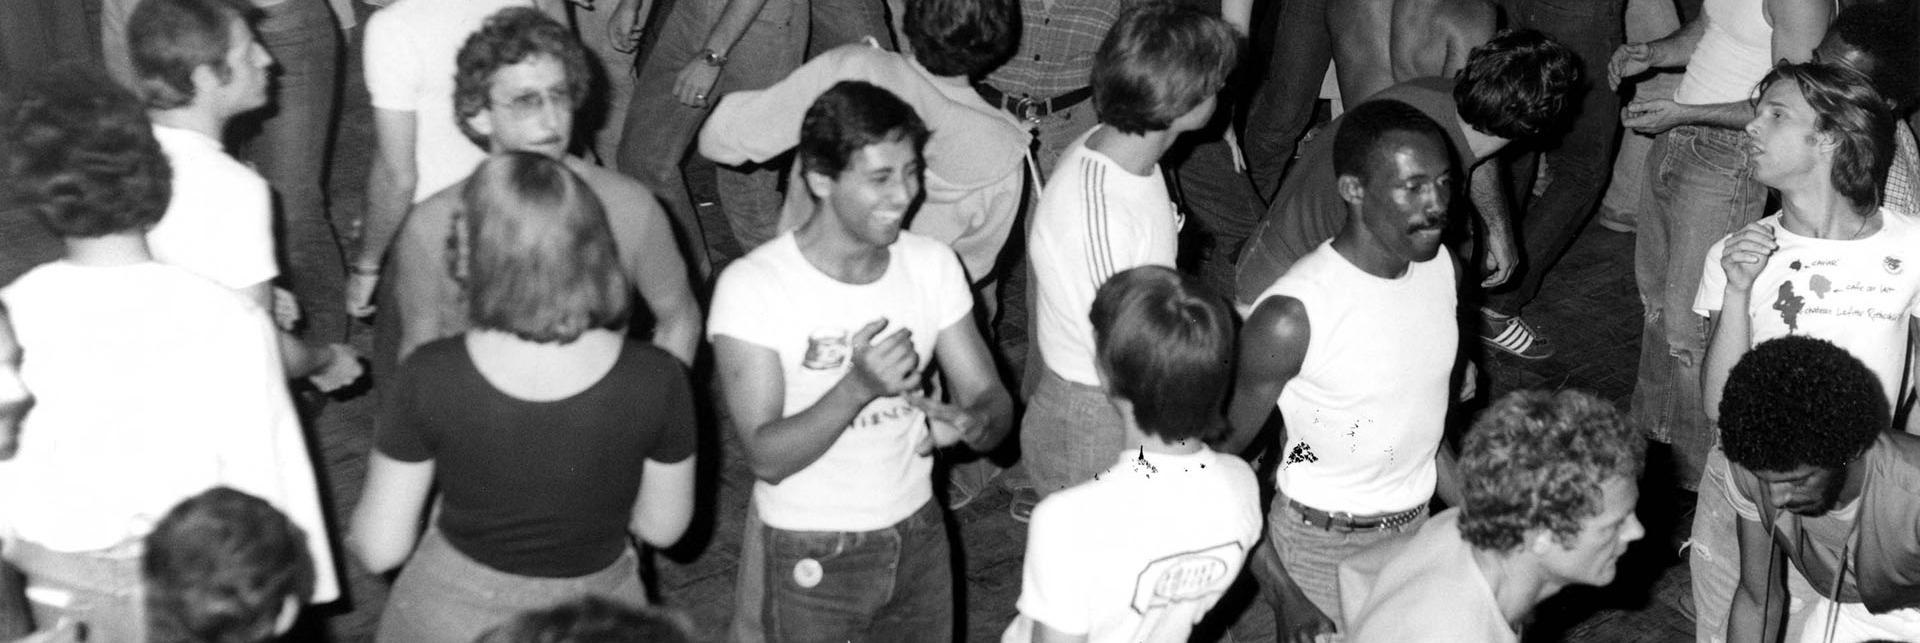 Gay men in the 1970s dancing